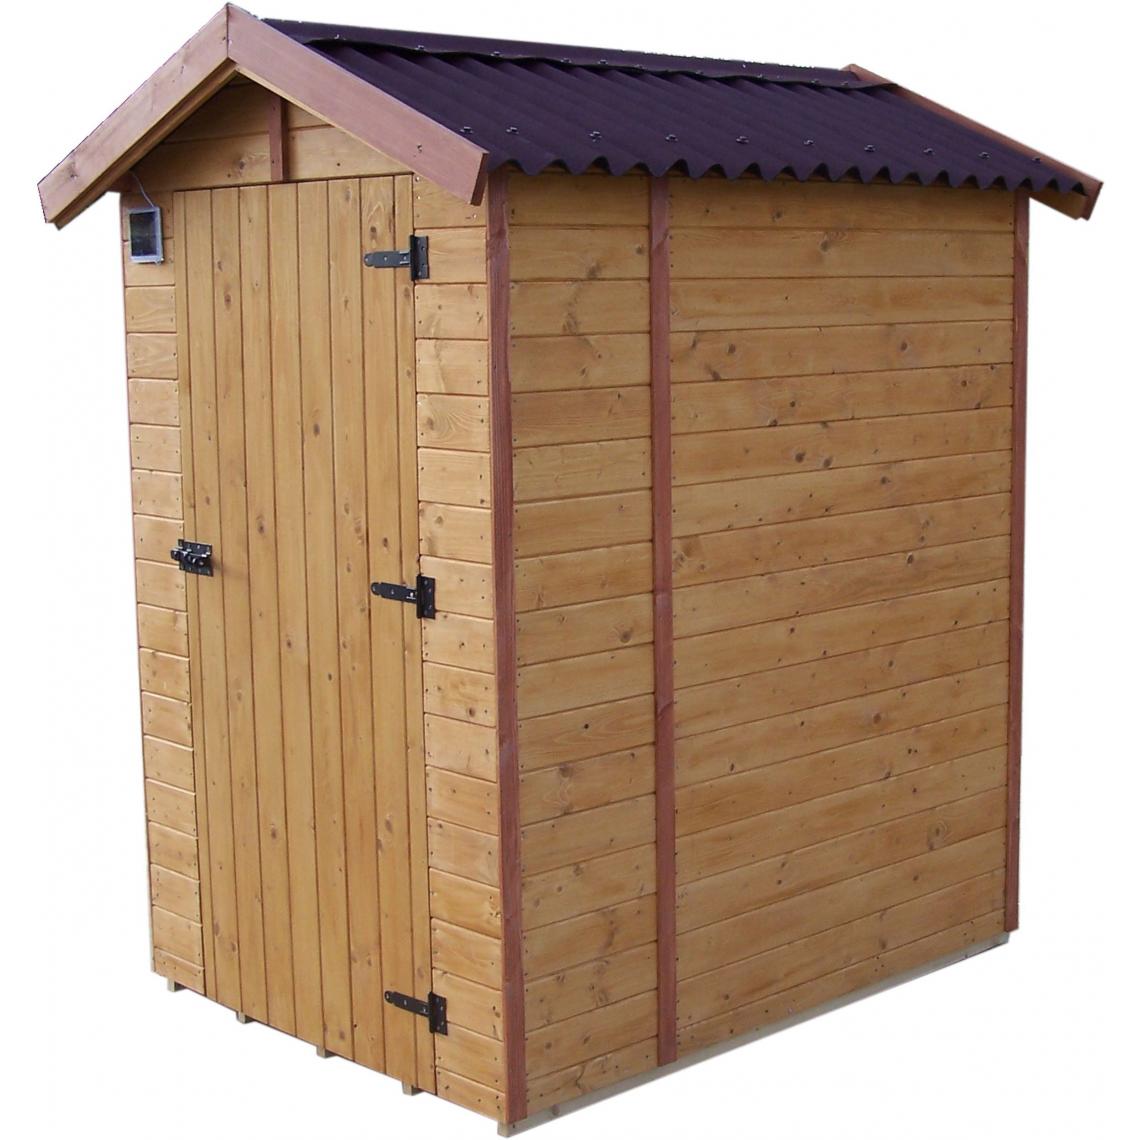 Habrita - Abri EDEN toilettes sèches bois massif avec plancher avec panneau épaisseur 16 mm avec lave-mains - Abris de jardin en bois